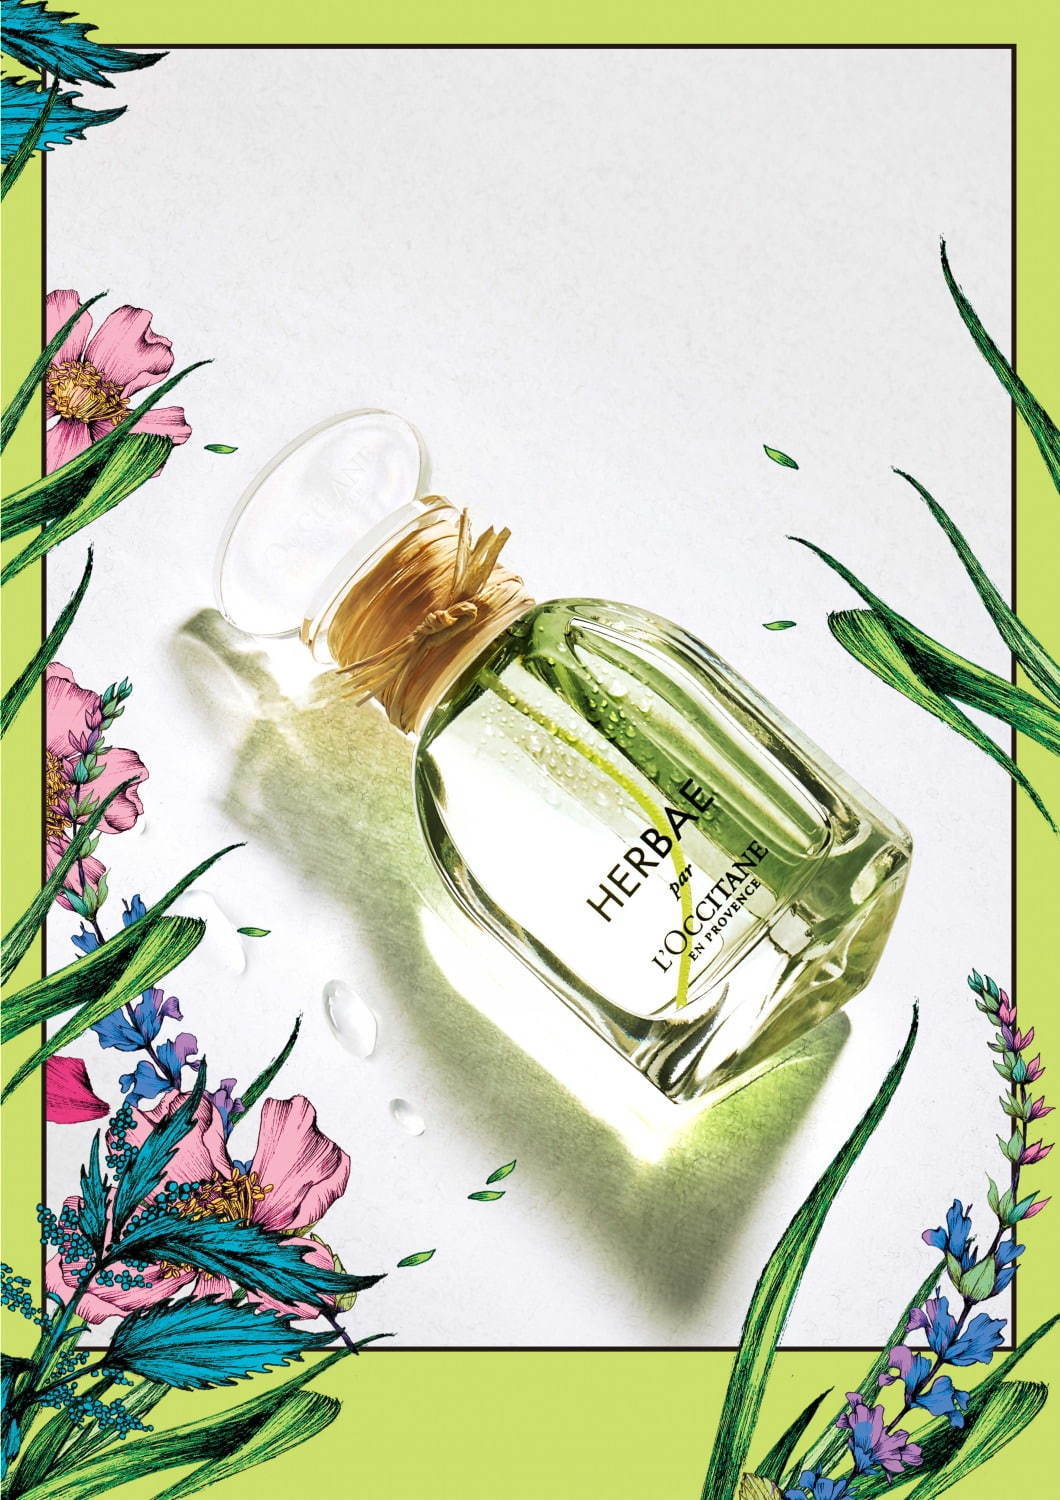 ロクシタン“緑豊かな草原”を想起させるハーブが主役の香水